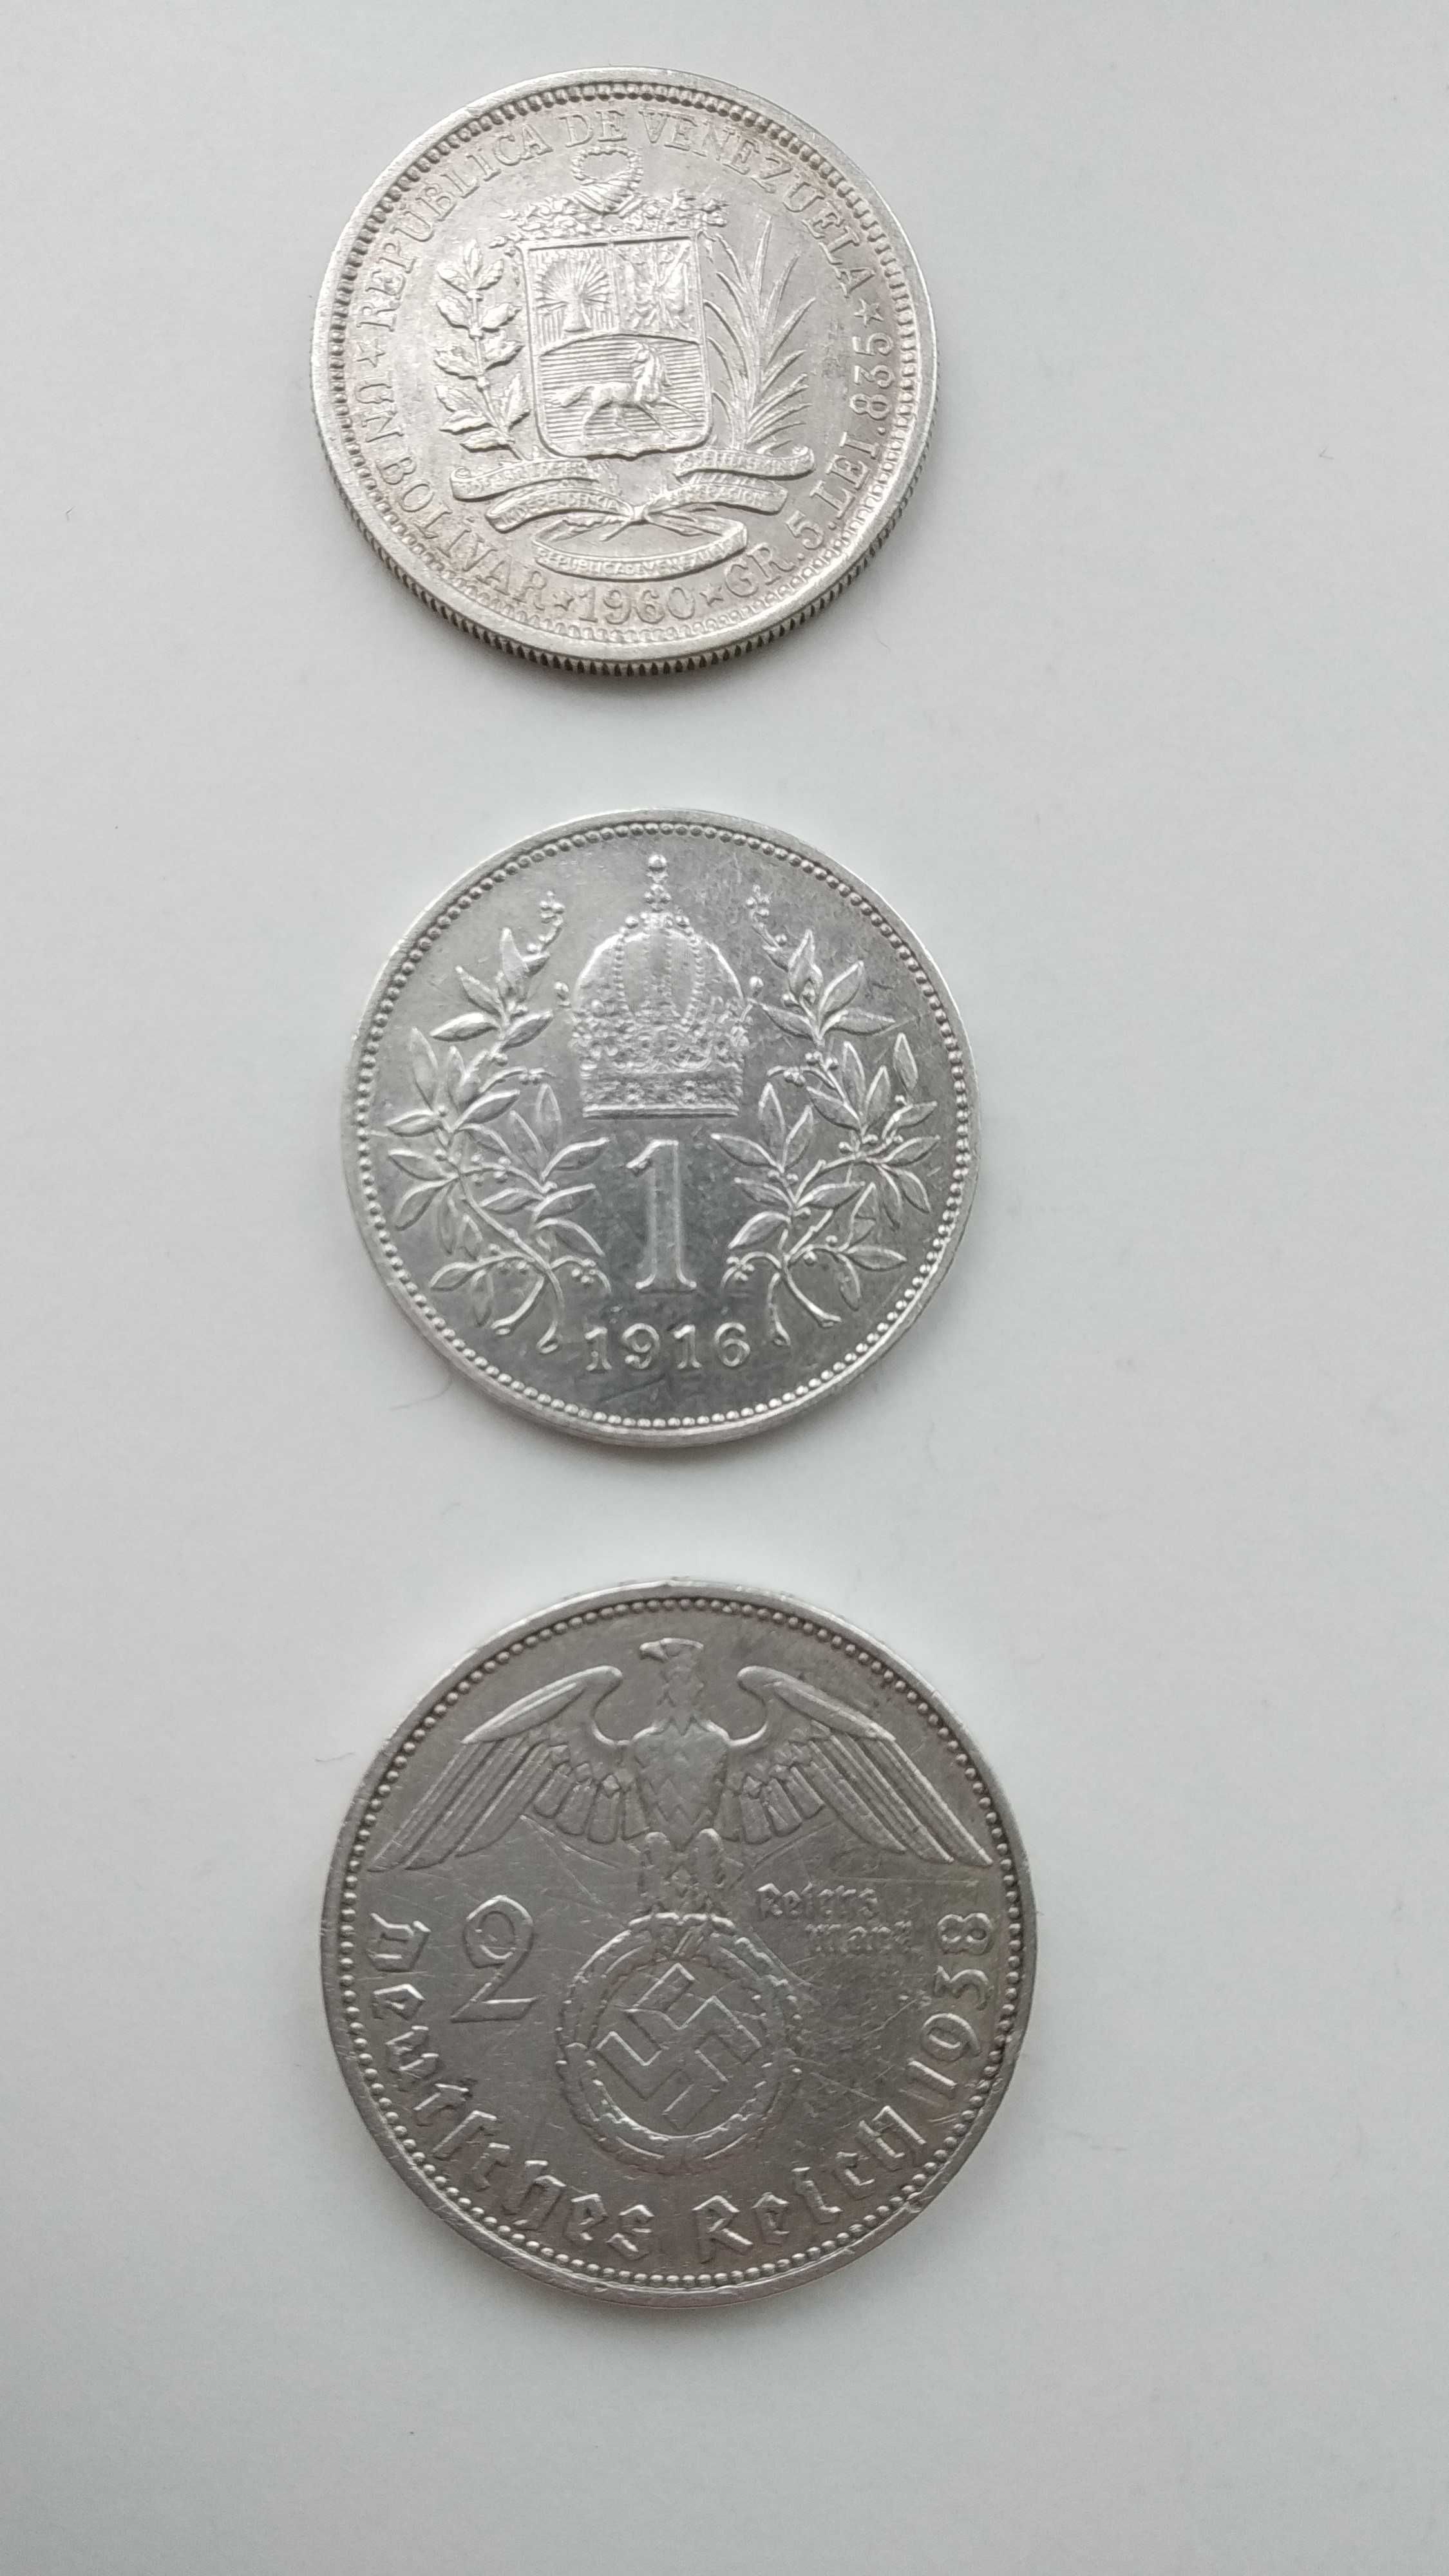 Монети: Німеччина, Австро-Угорщина, Венесуела.